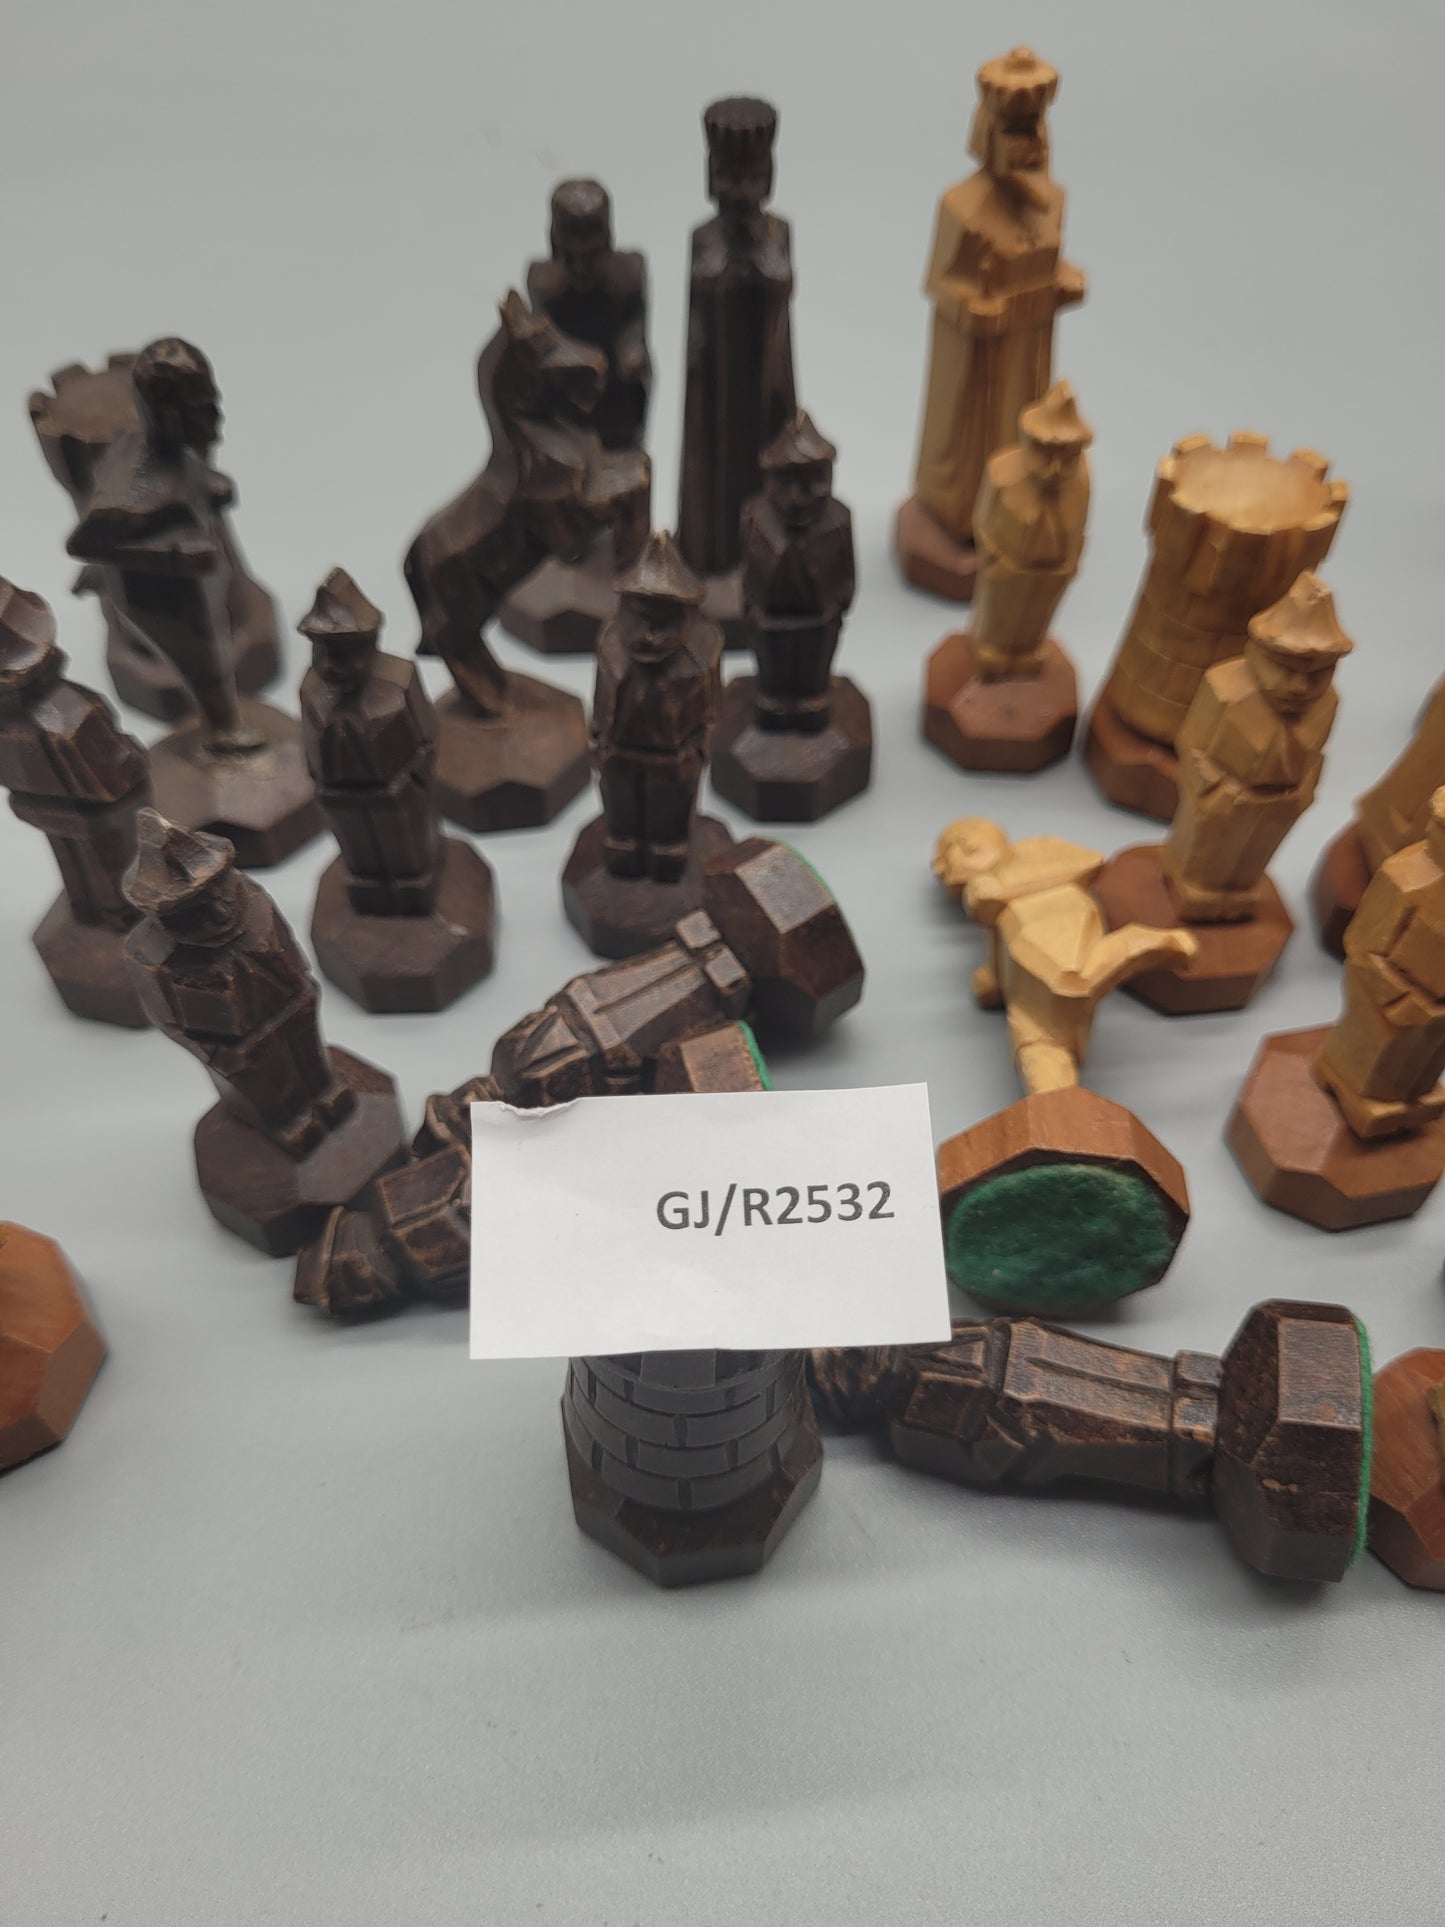 Antike Schachfiguren aus Holz - 32-teiliges Set Schachspiel